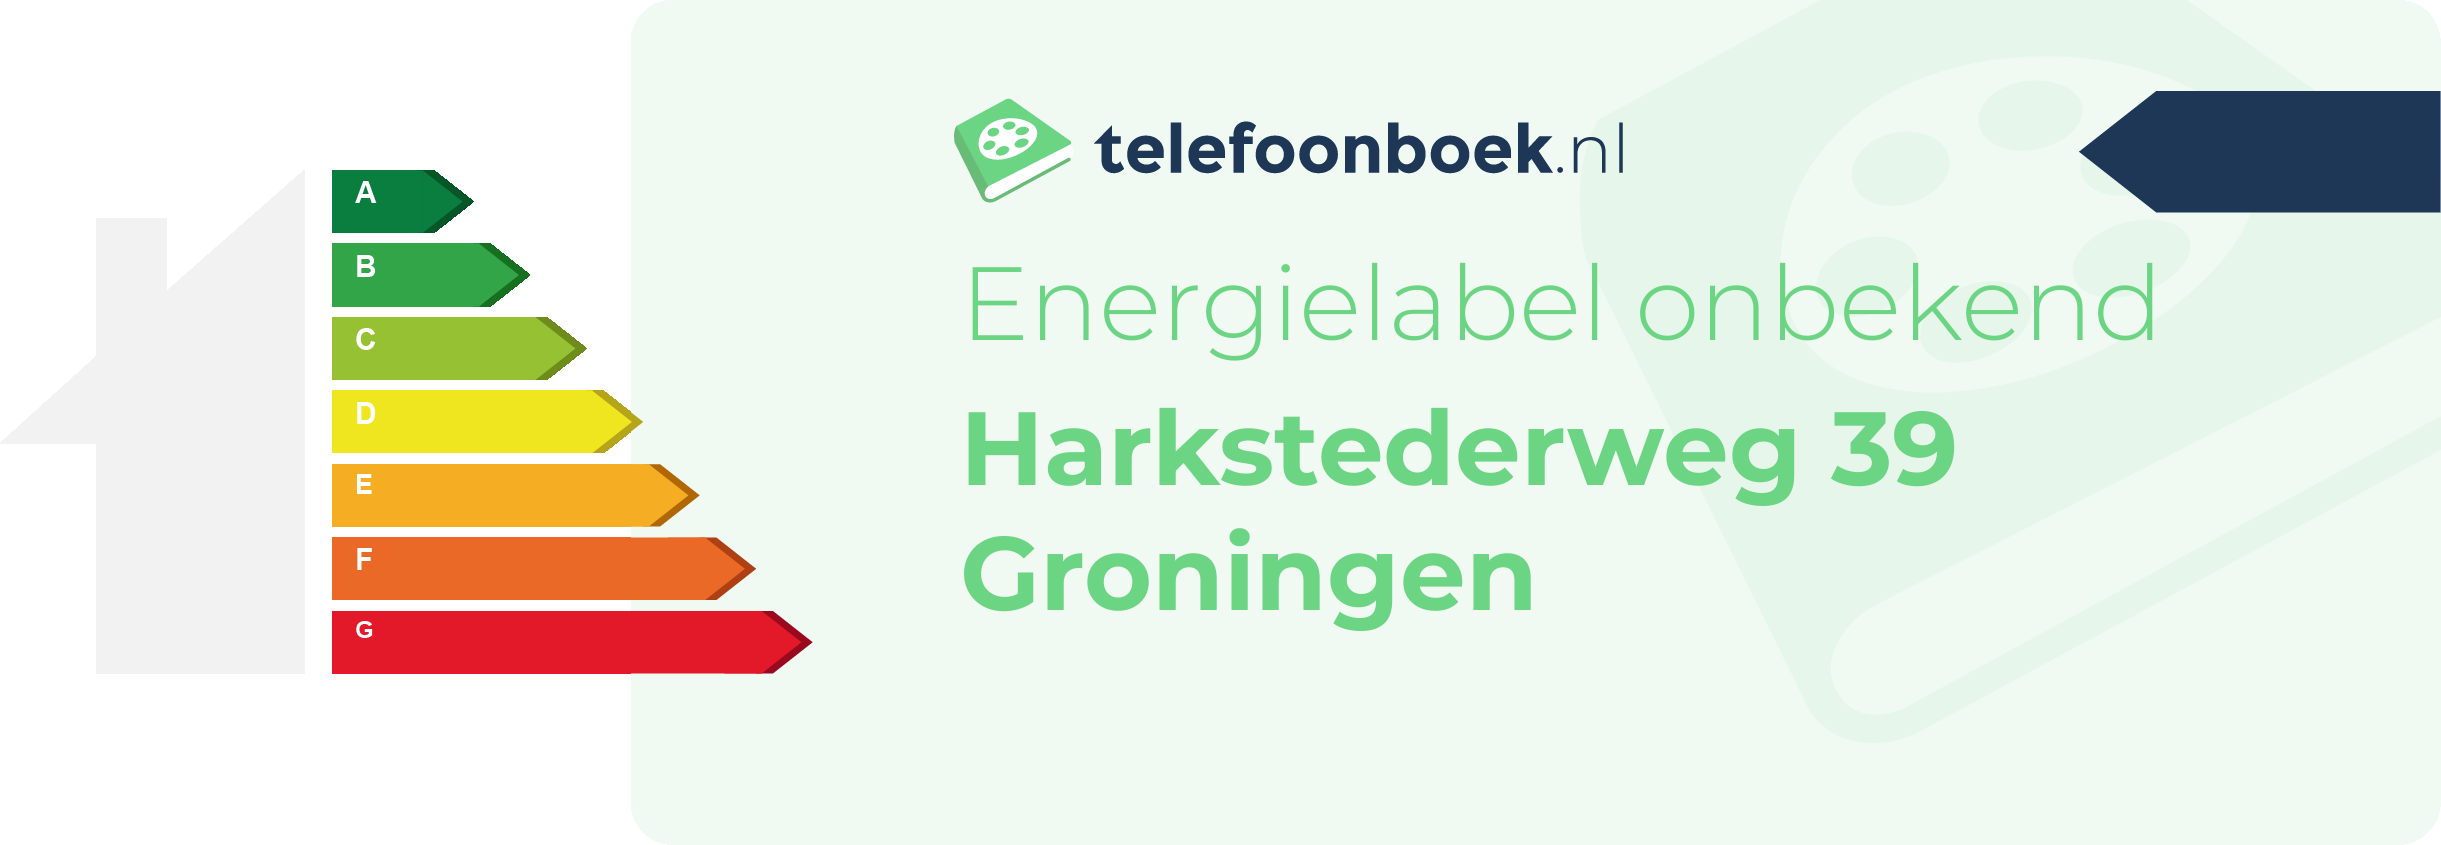 Energielabel Harkstederweg 39 Groningen